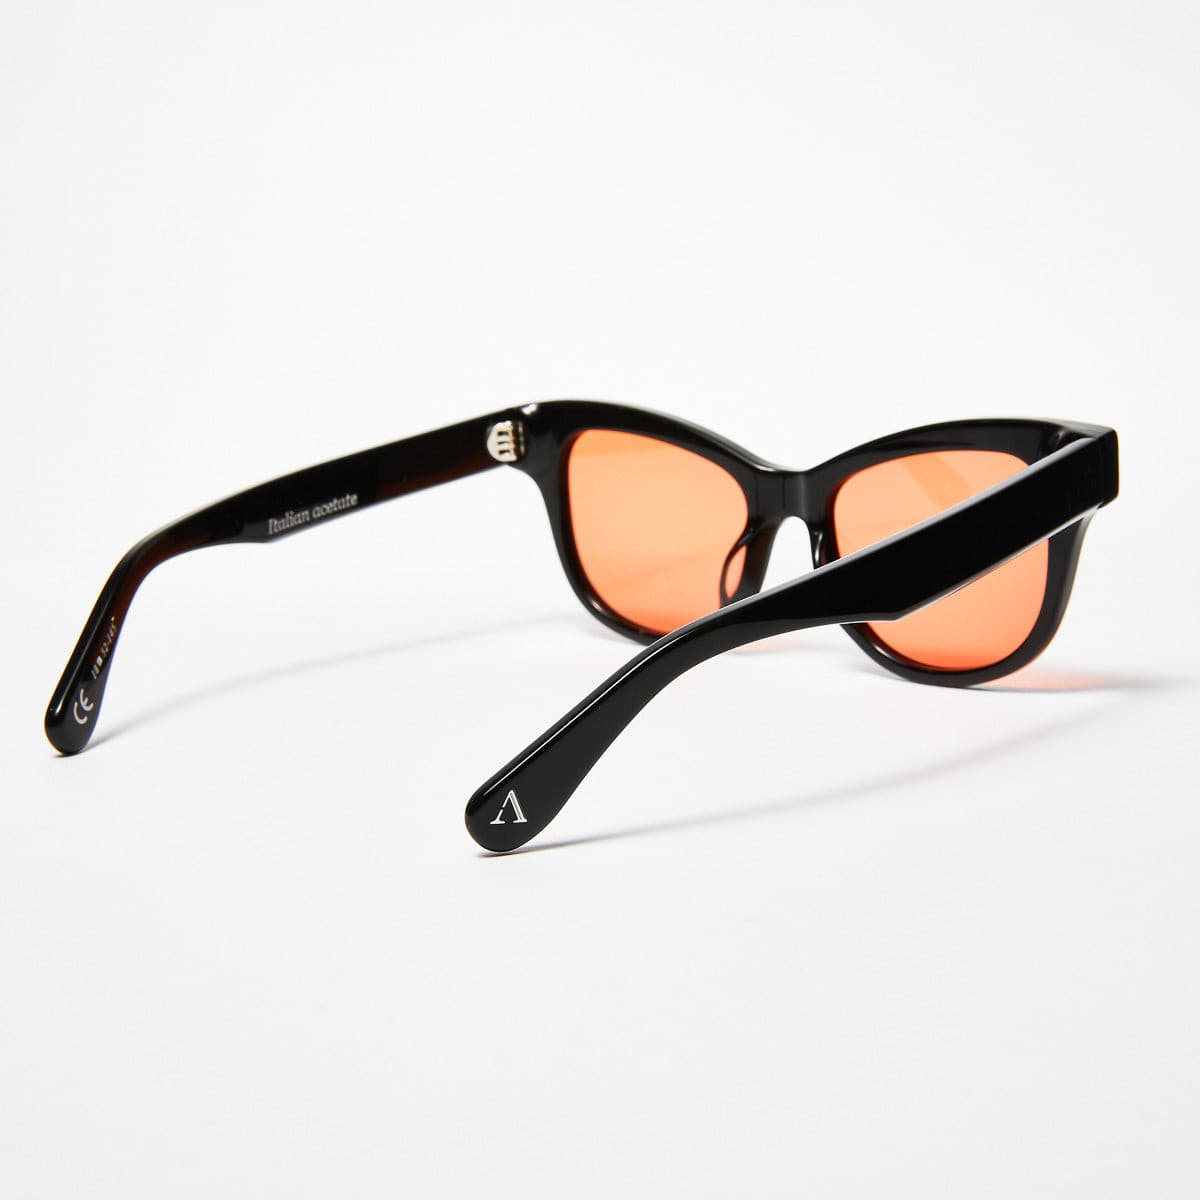 HELIX - Black Polished Frames / Orange Lens ŁEOIDE